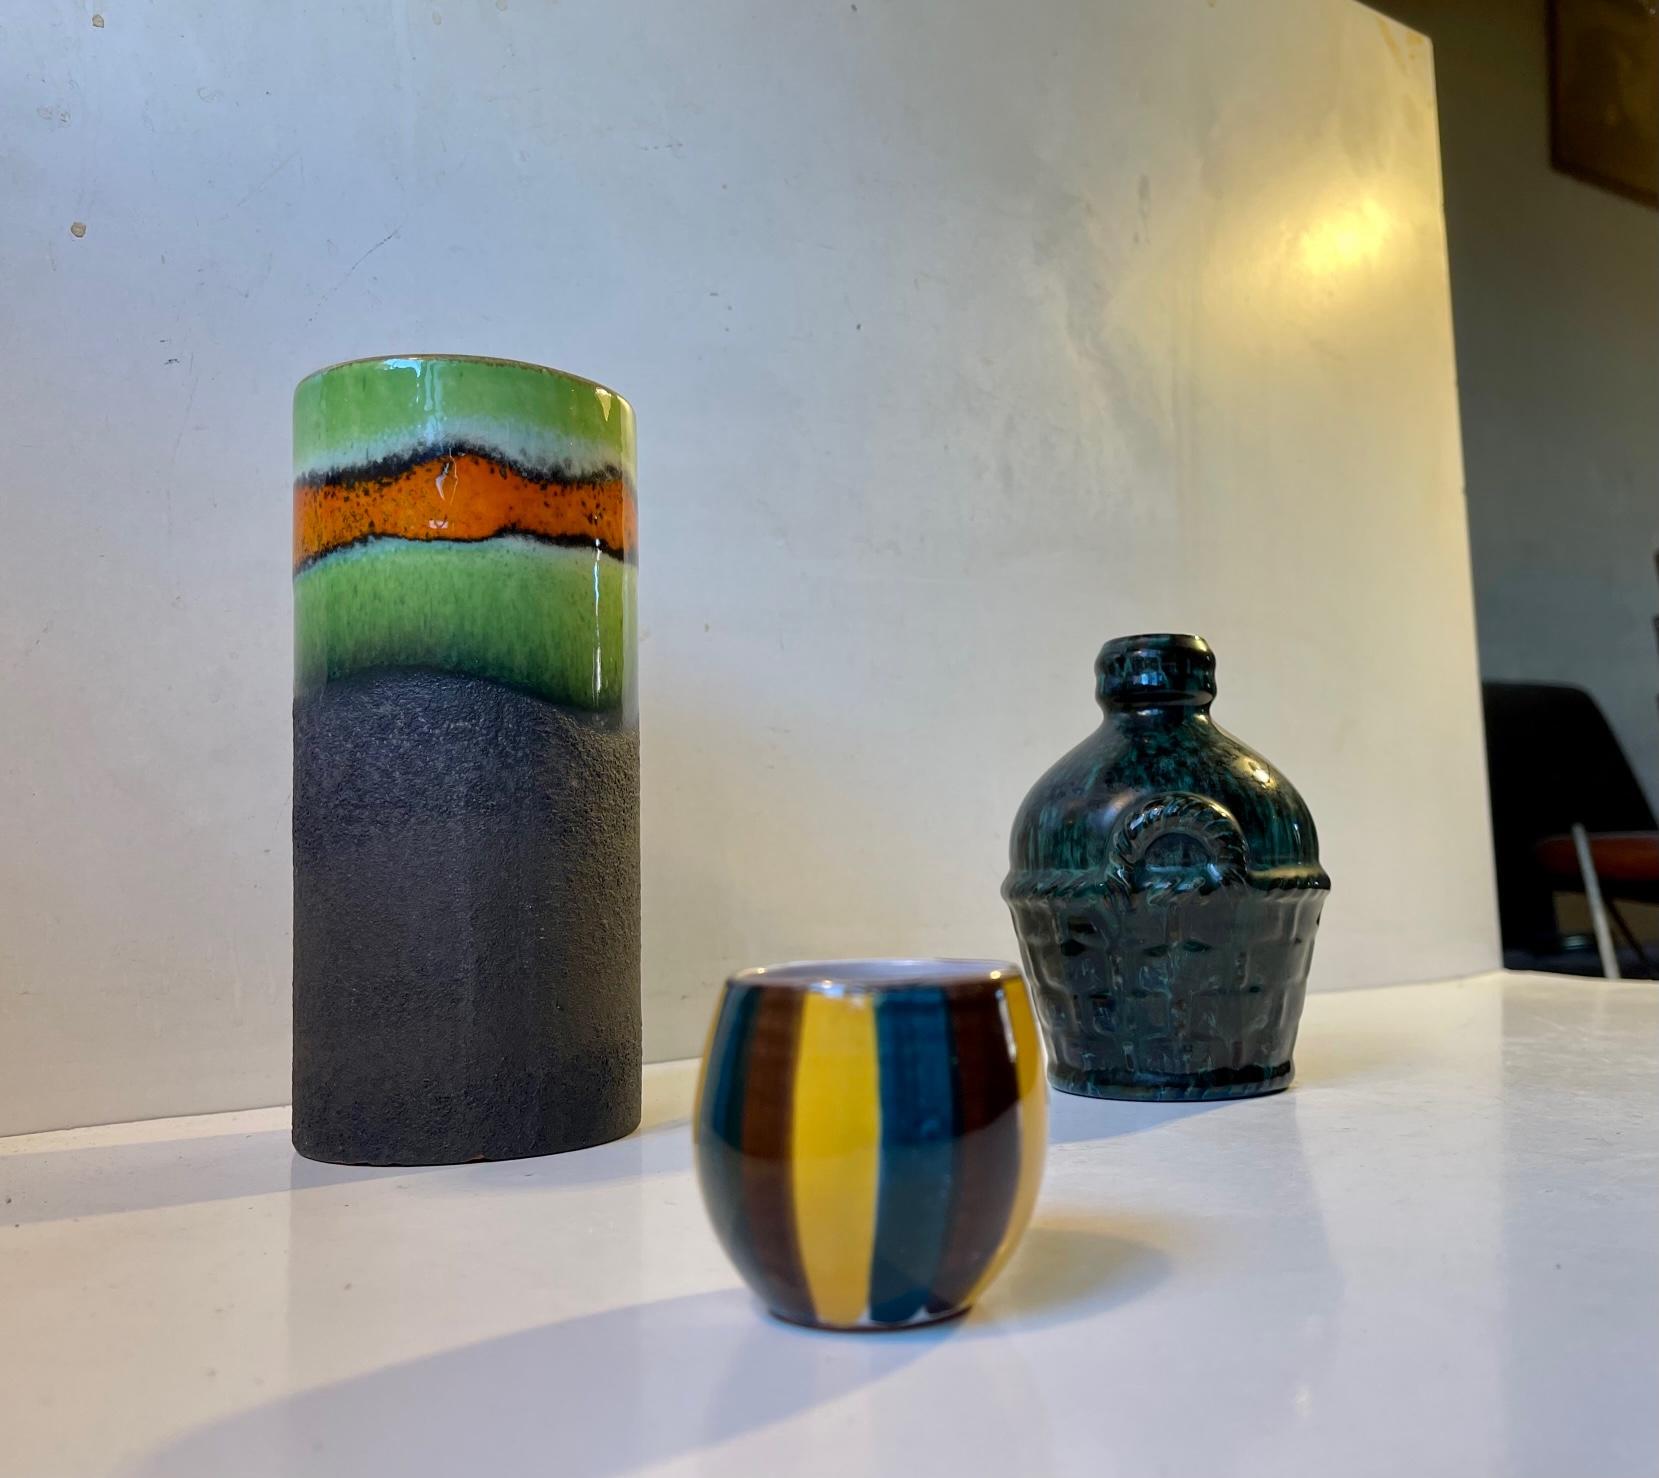 Groupe de 3 pièces en céramique et en grès scandinaves mixtes/curatées. Un vase cylindrique à glaçure verte et orange, un vase en forme de bouteille de vin à glaçure verte et noire et un petit vase/cupère rayé. Tous les travaux ont été réalisés en